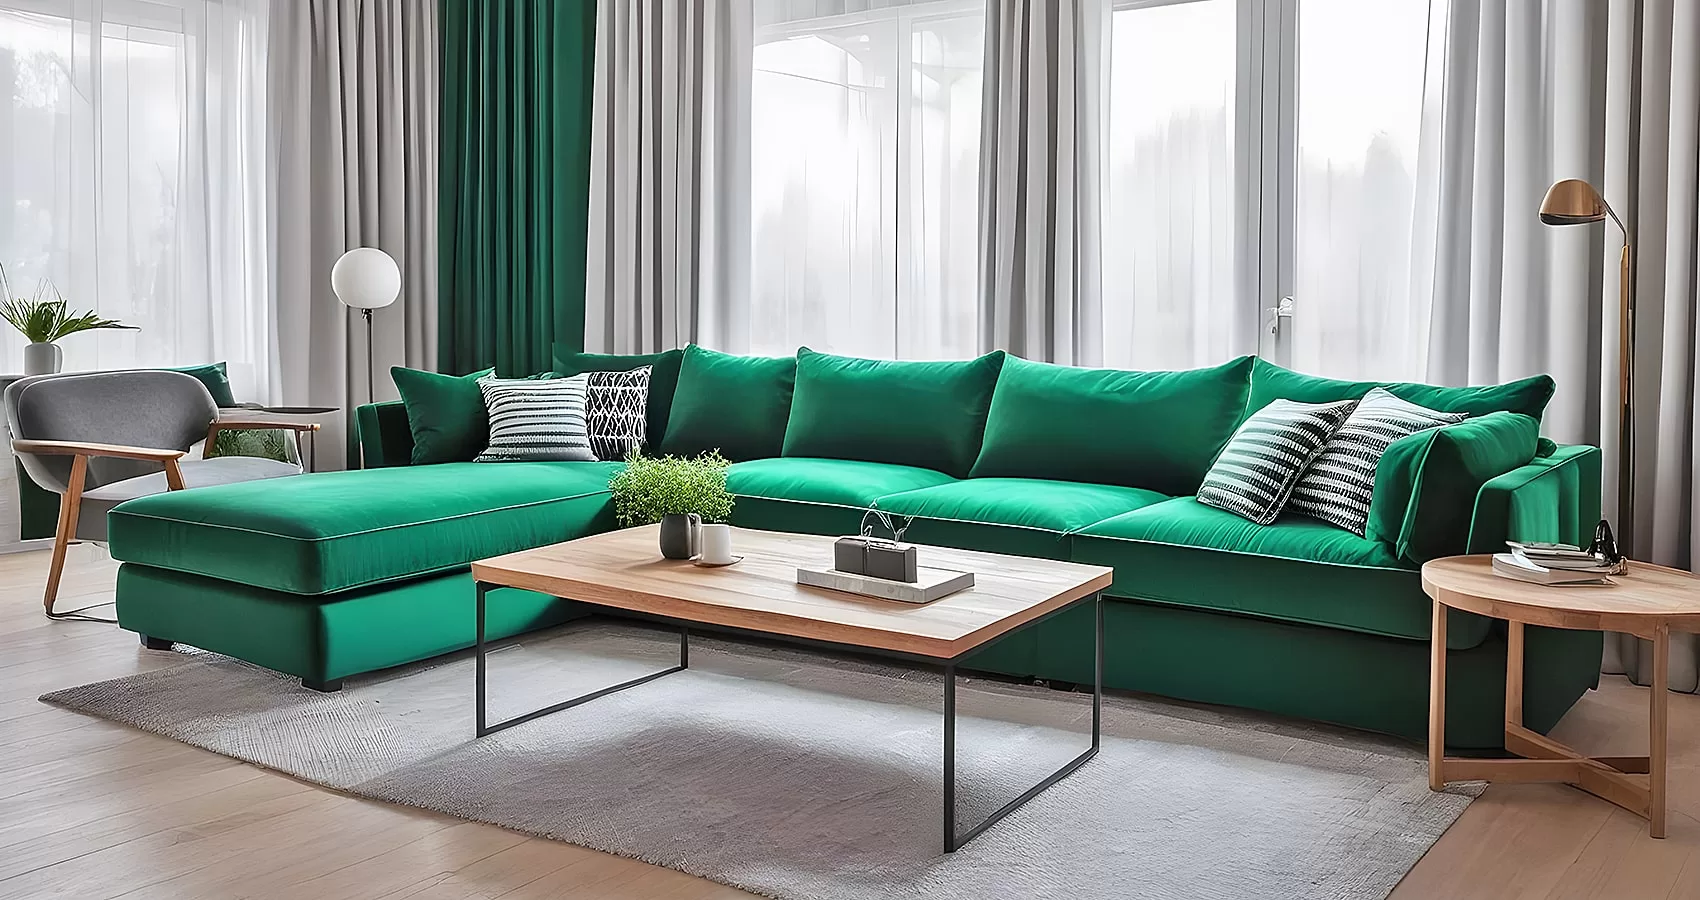 Emerald Green Sofa Living Room Ideas | Emerald Green Couch Living Room Ideas